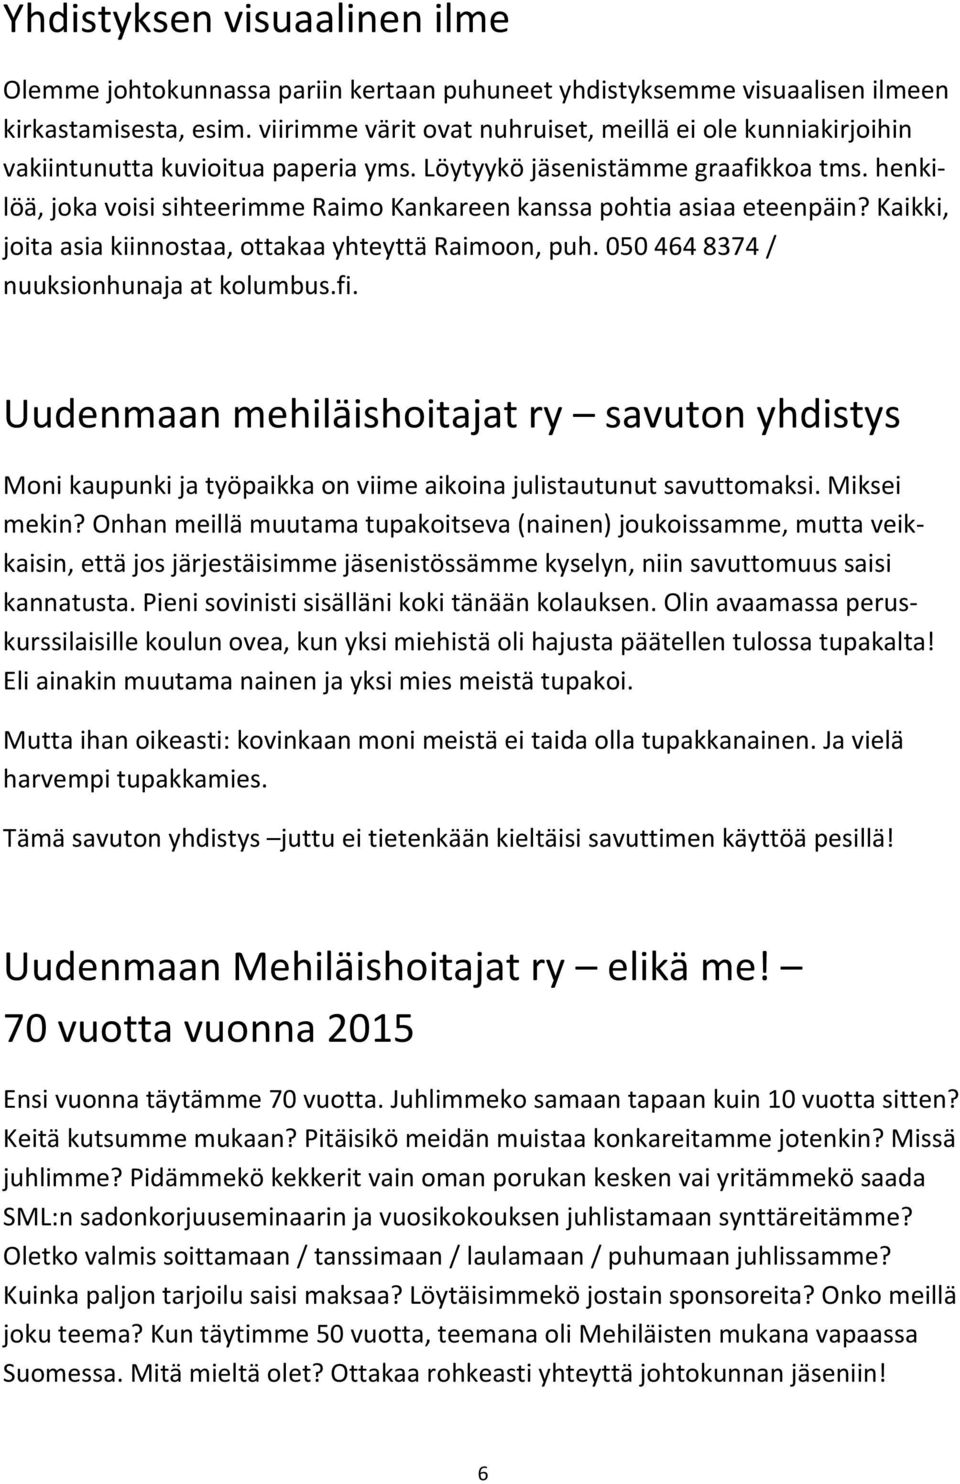 henki- löä, joka voisi sihteerimme Raimo Kankareen kanssa pohtia asiaa eteenpäin? Kaikki, joita asia kiinnostaa, ottakaa yhteyttä Raimoon, puh. 050 464 8374 / nuuksionhunaja at kolumbus.fi.